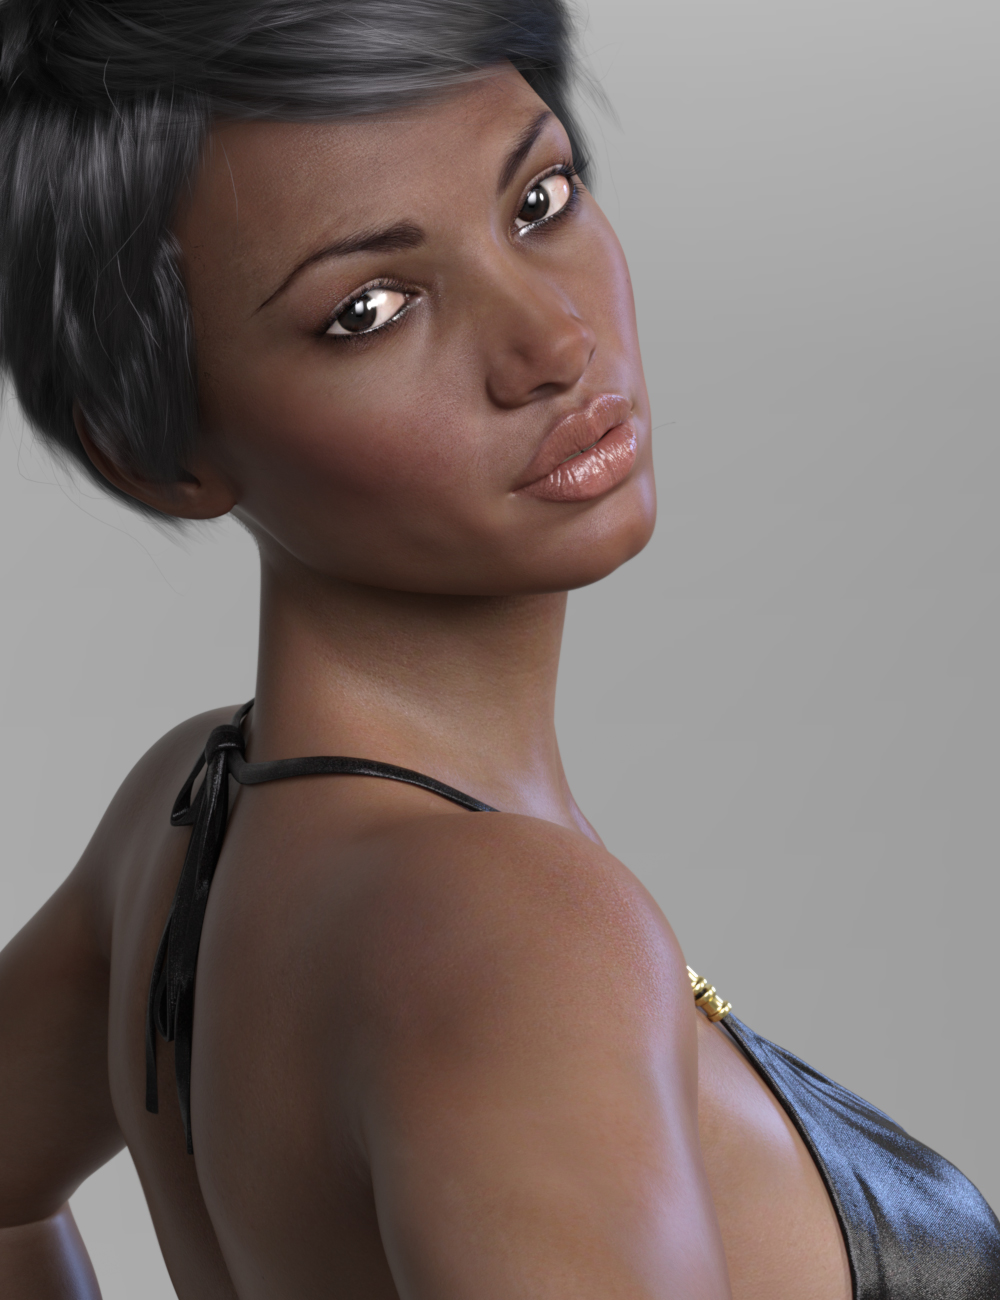 RY Darya for Genesis 8 Female by: Raiya, 3D Models by Daz 3D